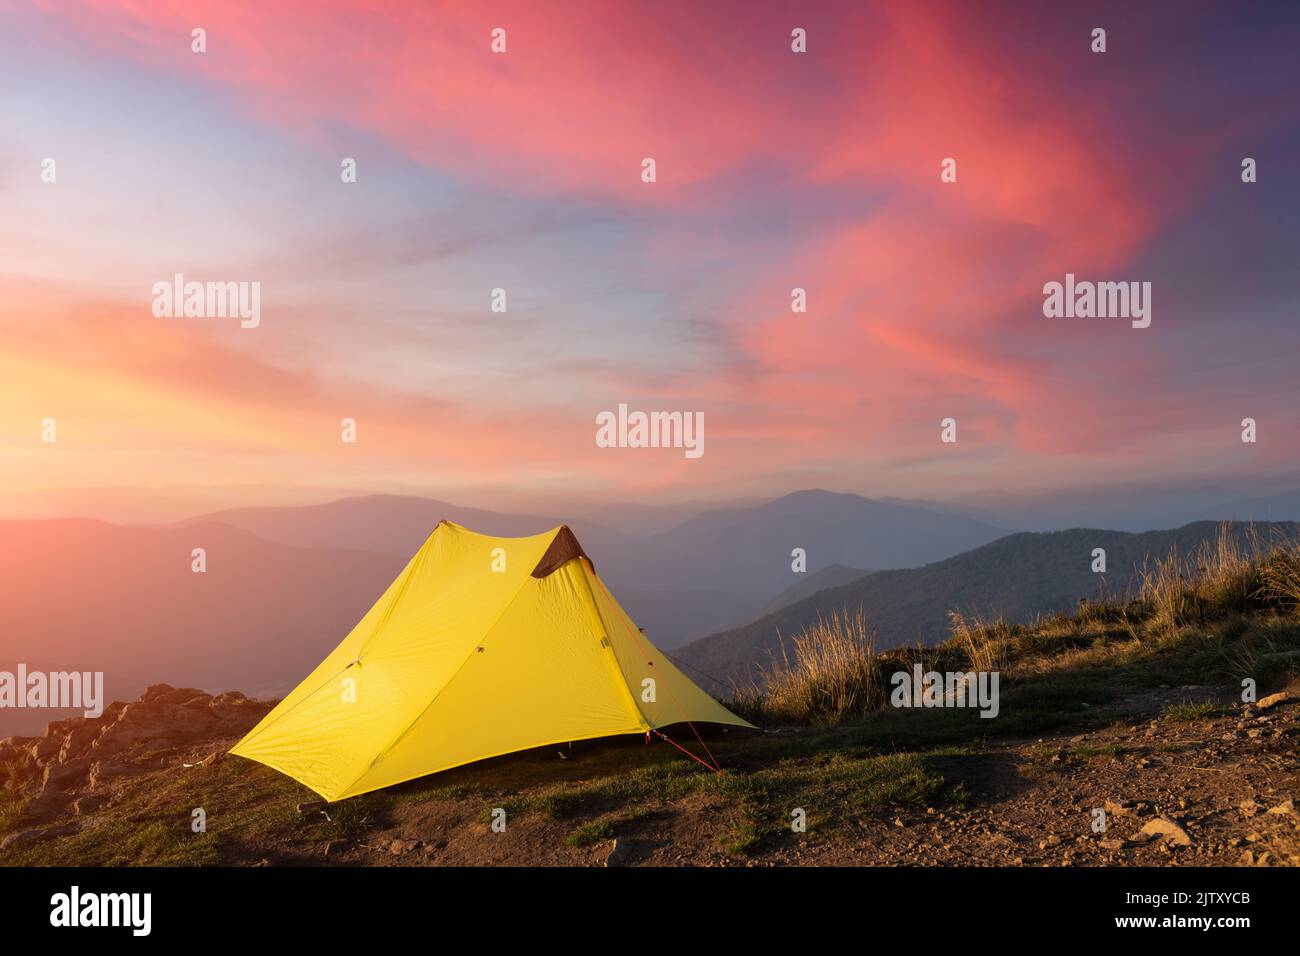 Tente jaune sur fond d'un paysage de montagne incroyable pendant un magnifique coucher de soleil. Des montagnes incroyables. Concept du tourisme Banque D'Images